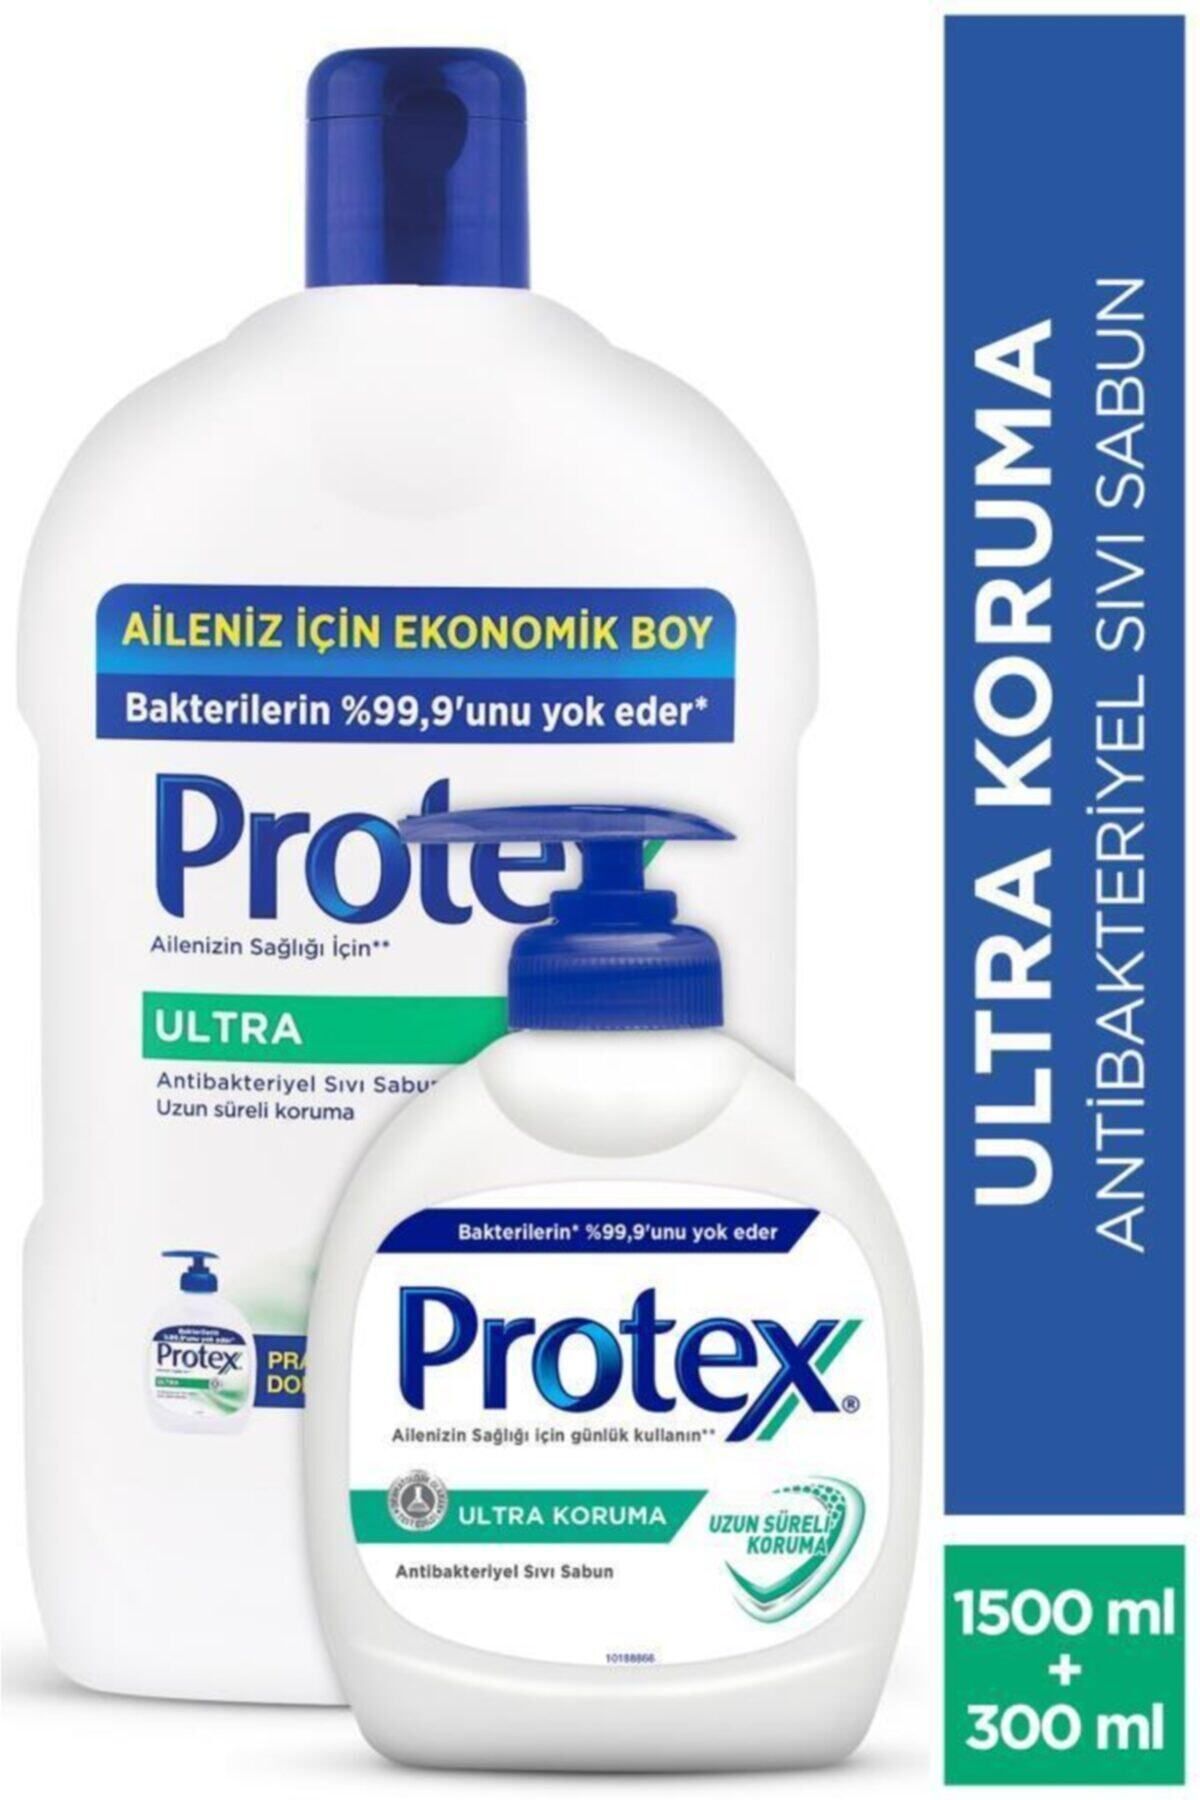 Protex Ultra Uzun Süreli Koruma Sıvı Sabun 1500 ml + 300 ml